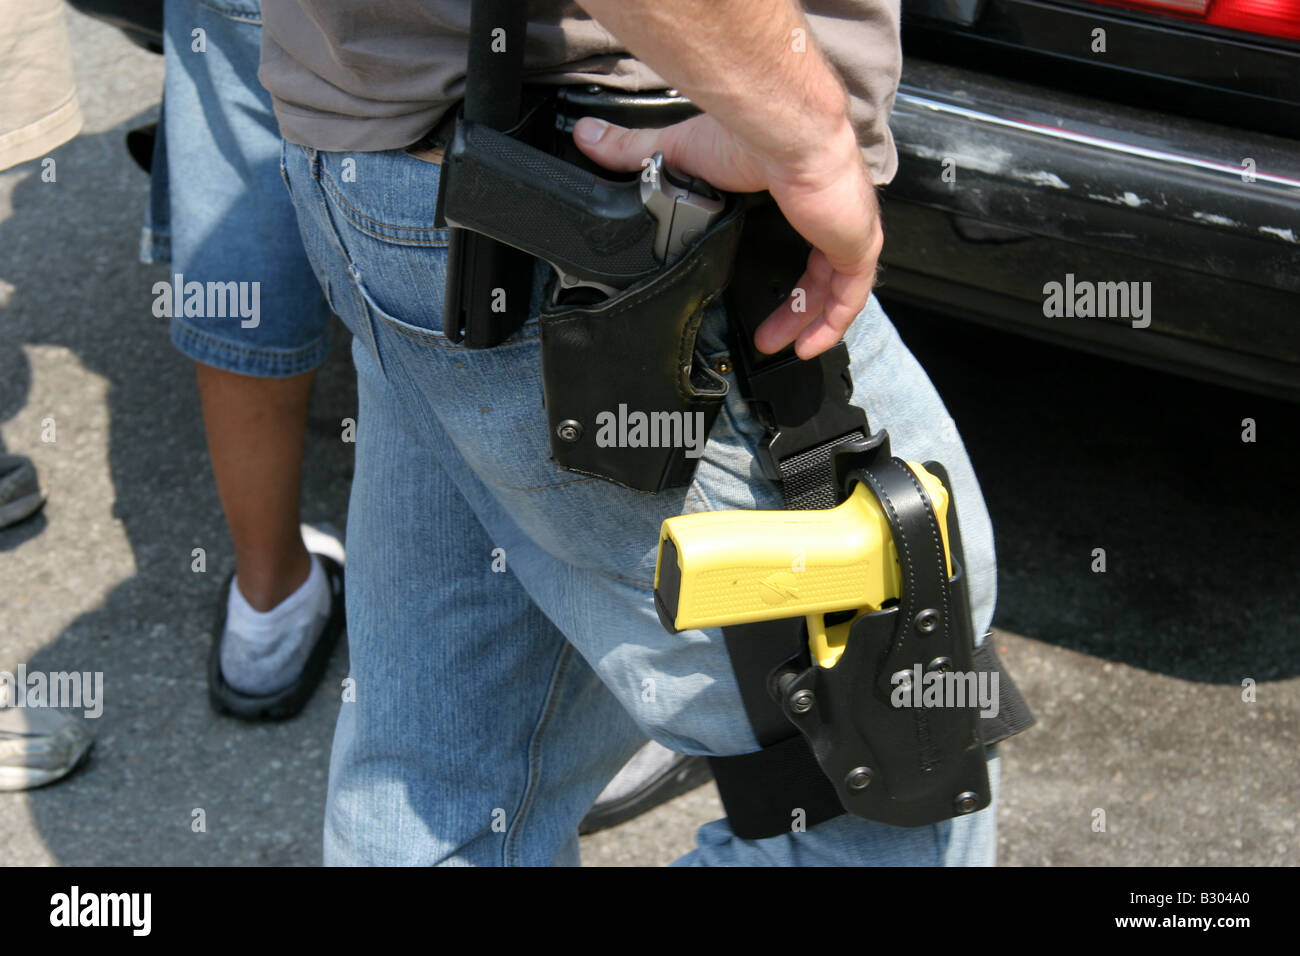 Zivilkleidung Polizei Detektiv in New York City mit Handfeuerwaffe und Tazer an Bein geschnallt bewaffnet Stockfoto